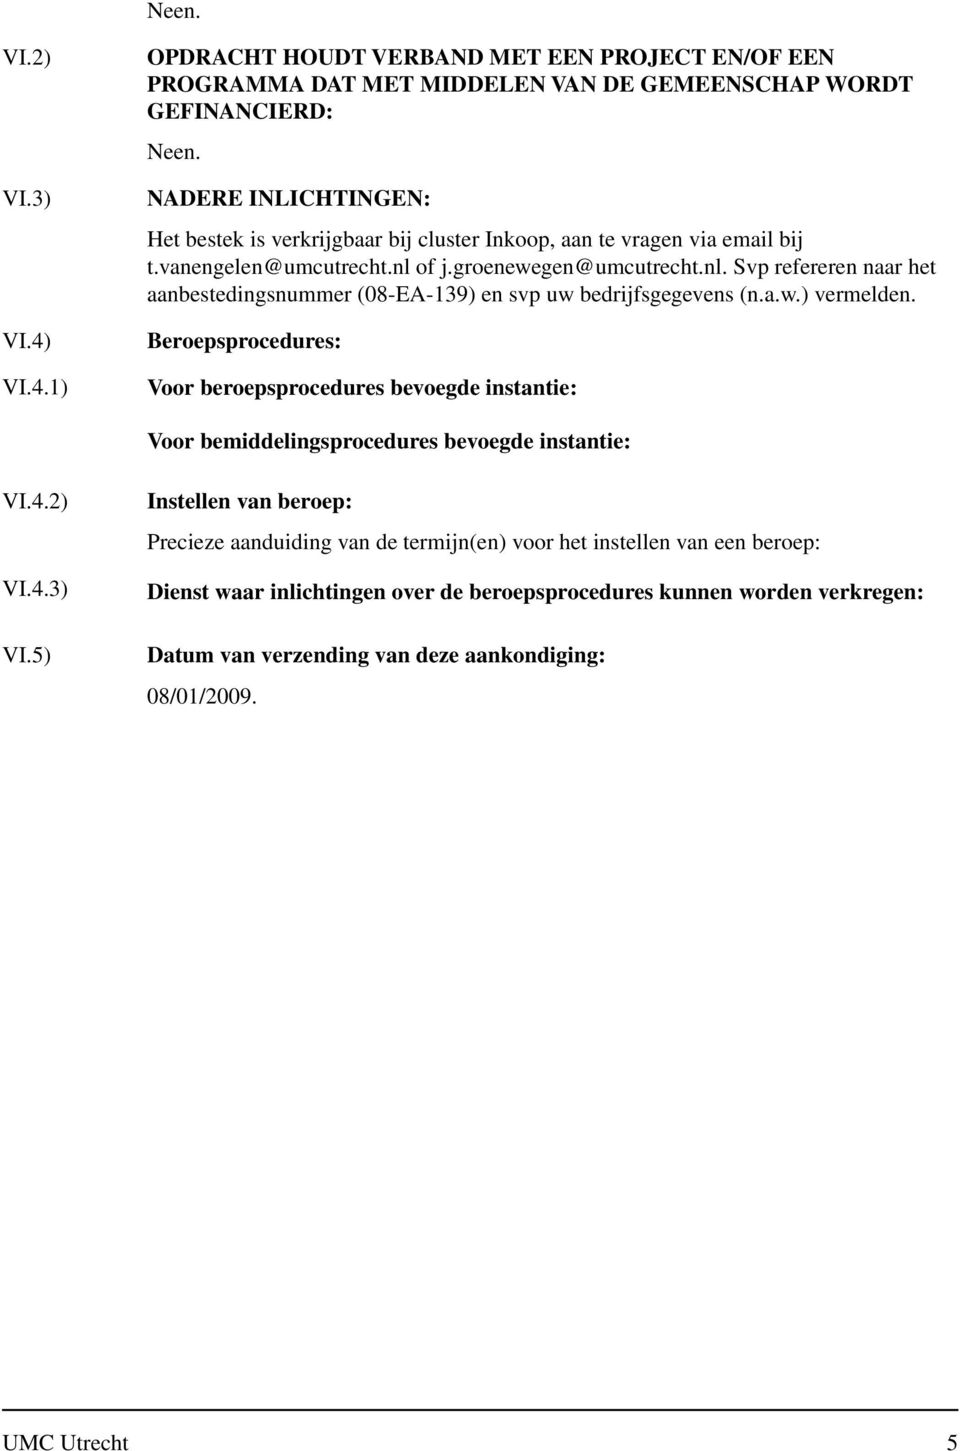 aan te vragen via email bij t.vanengelen@umcutrecht.nl of j.groenewegen@umcutrecht.nl. Svp refereren naar het aanbestedingsnummer (08-EA-139) en svp uw bedrijfsgegevens (n.a.w.) vermelden.